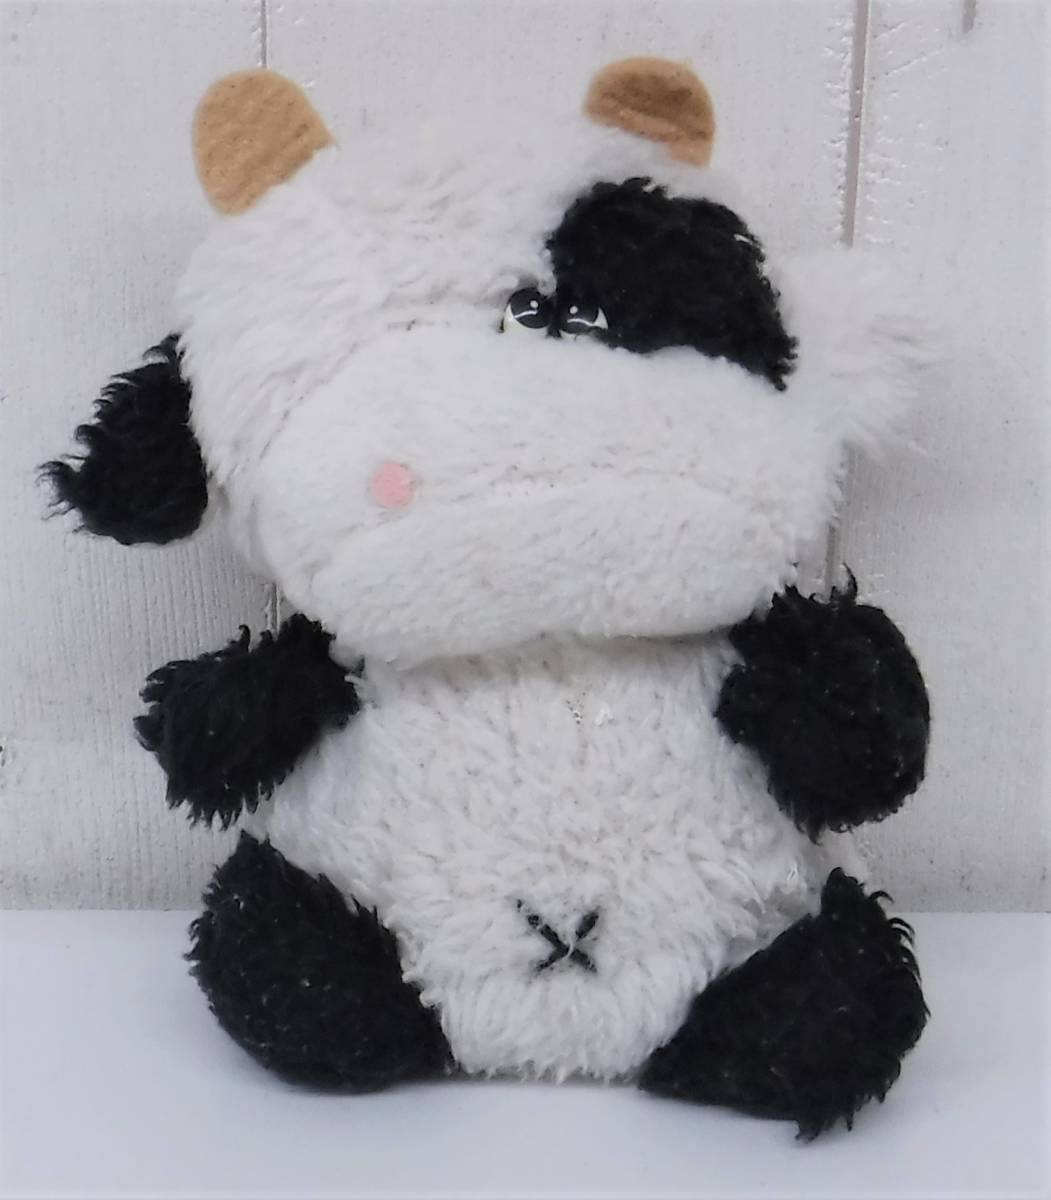  Showa Retro подлинная вещь * retro мягкая игрушка *SEKIGUCHI сиденье gchi* корова корова * Mini размер 16cm * античный коллекция 